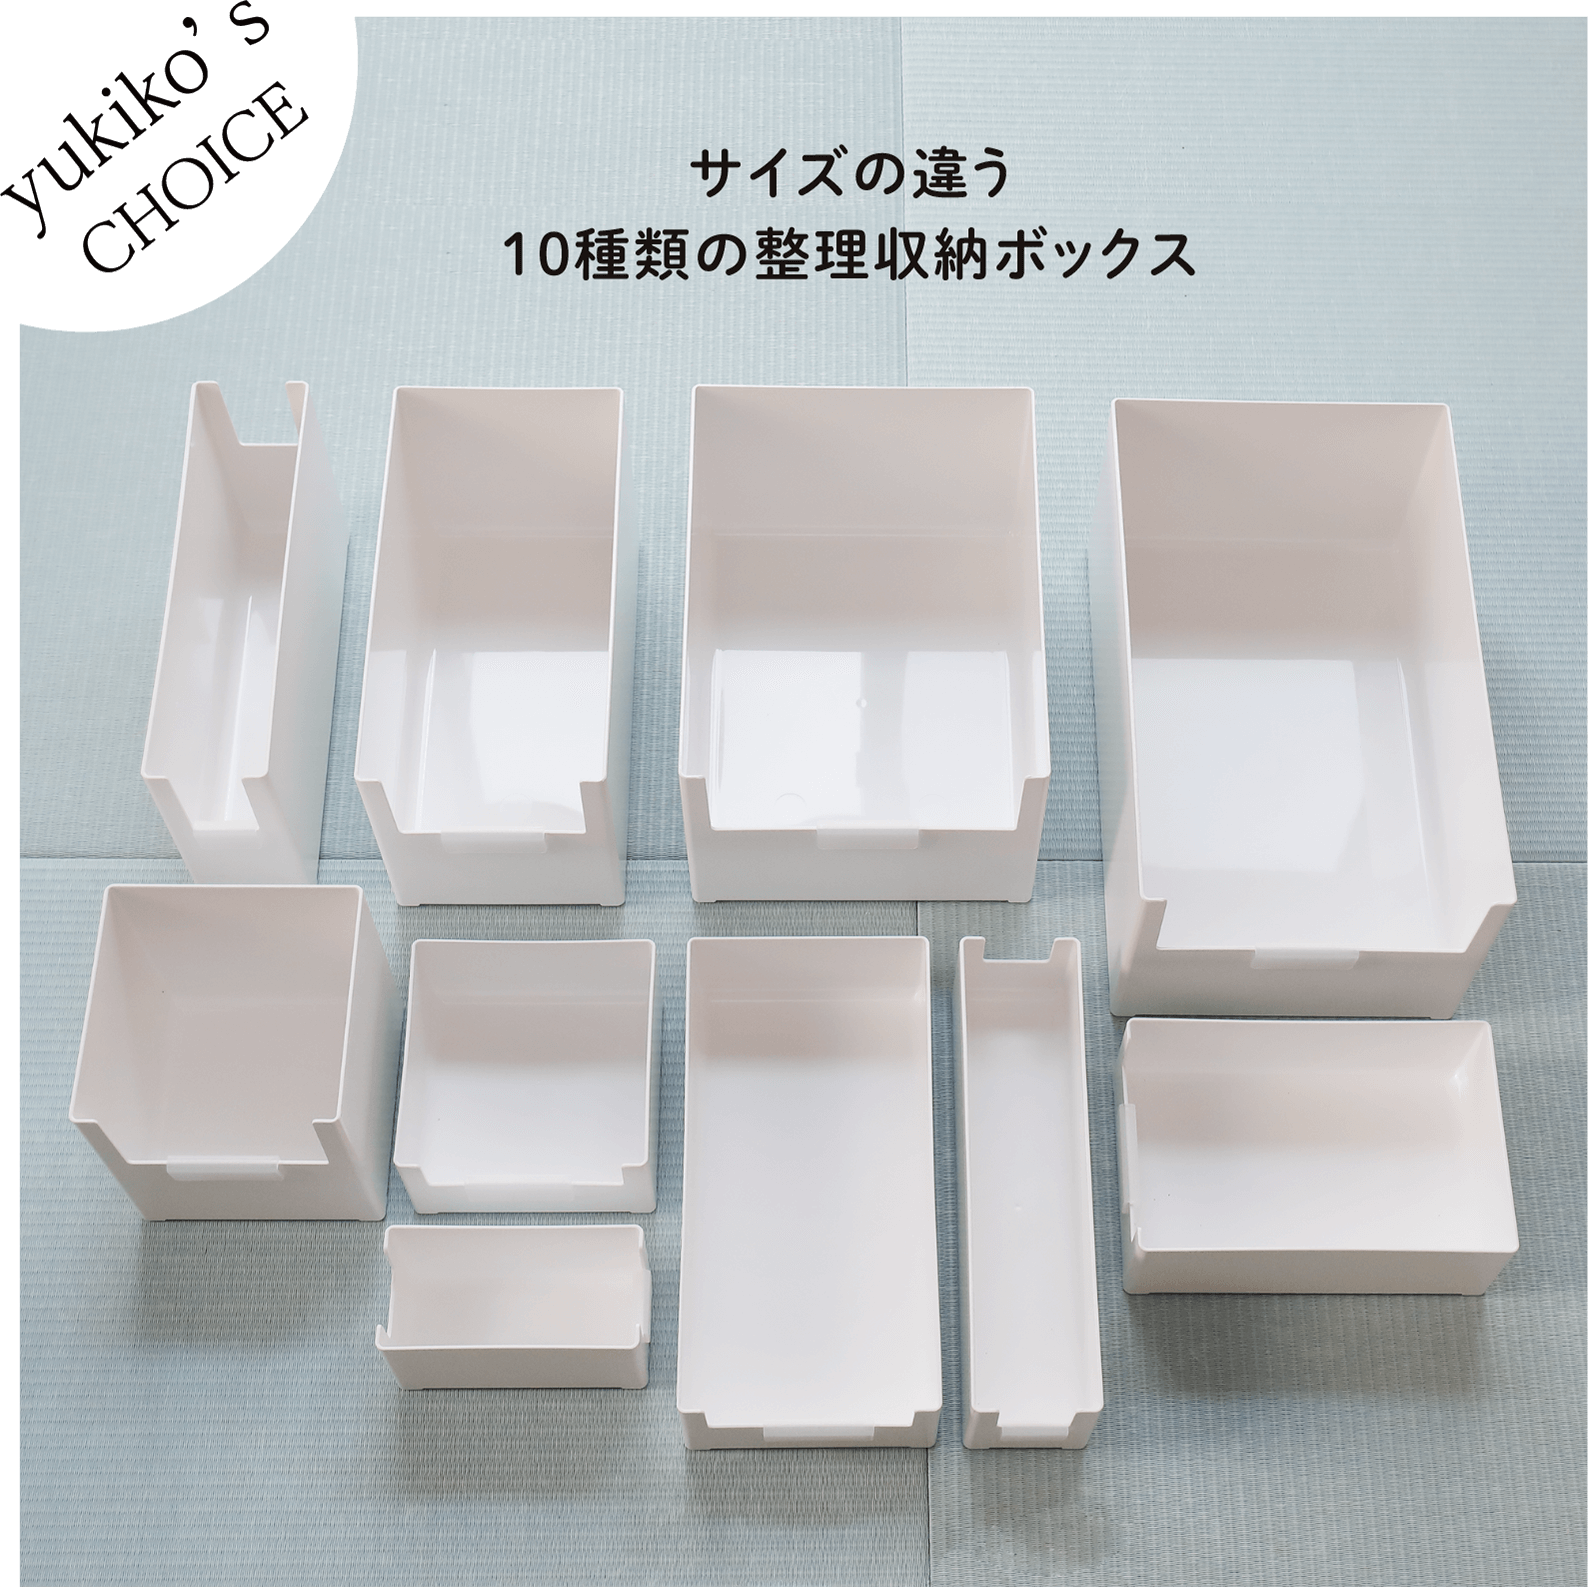 サイズの違う10種類の整理収納ボックス